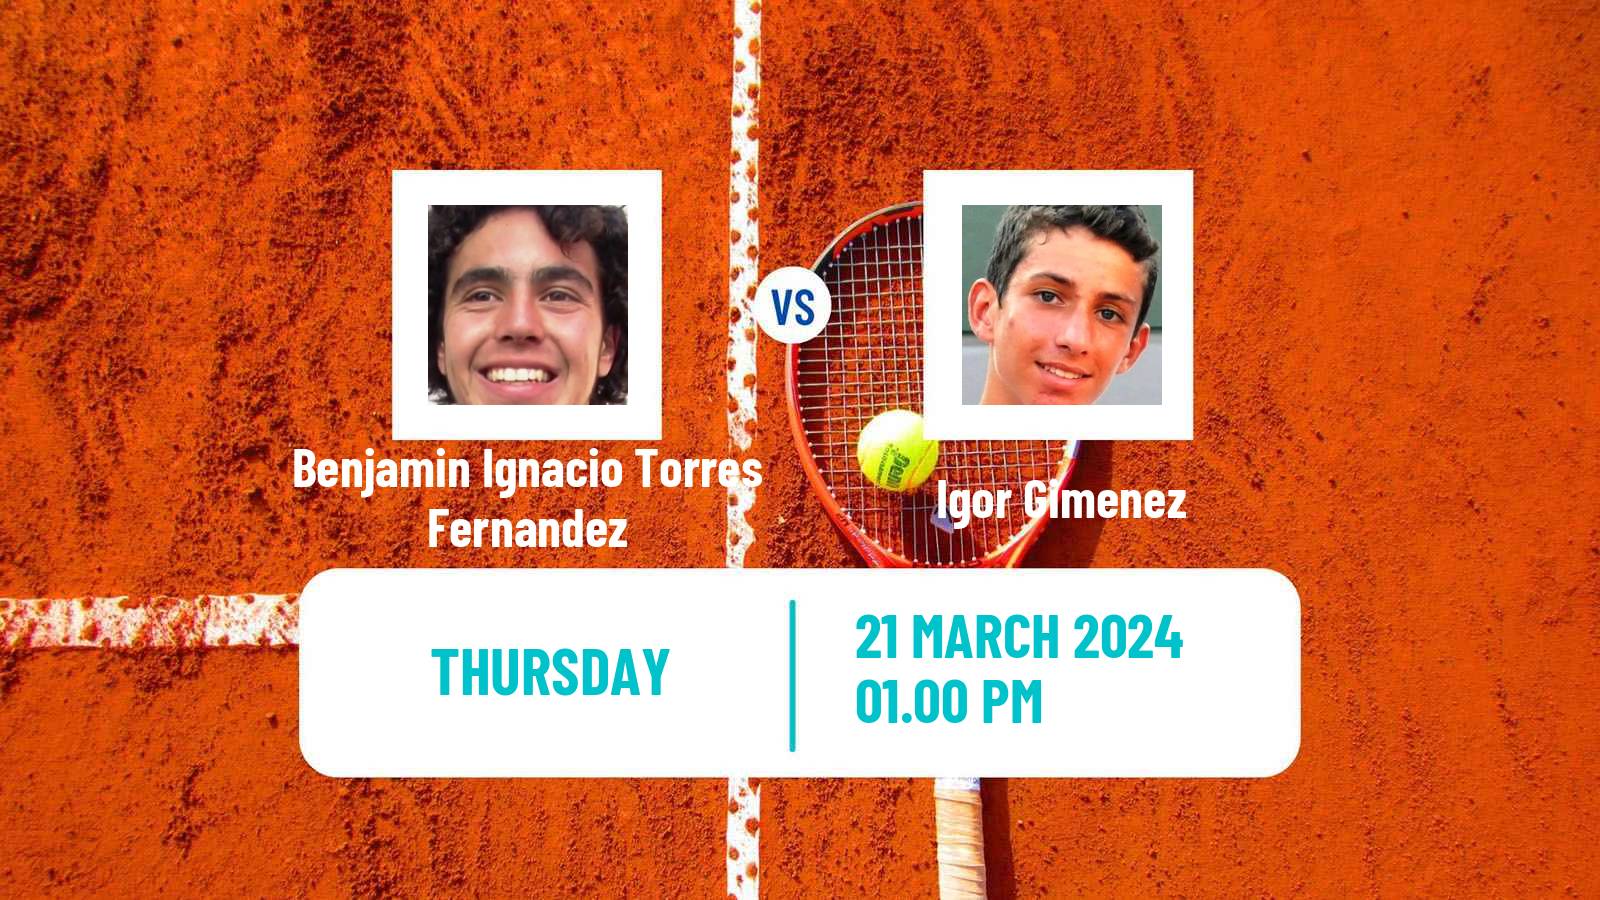 Tennis ITF M25 Maceio Men Benjamin Ignacio Torres Fernandez - Igor Gimenez